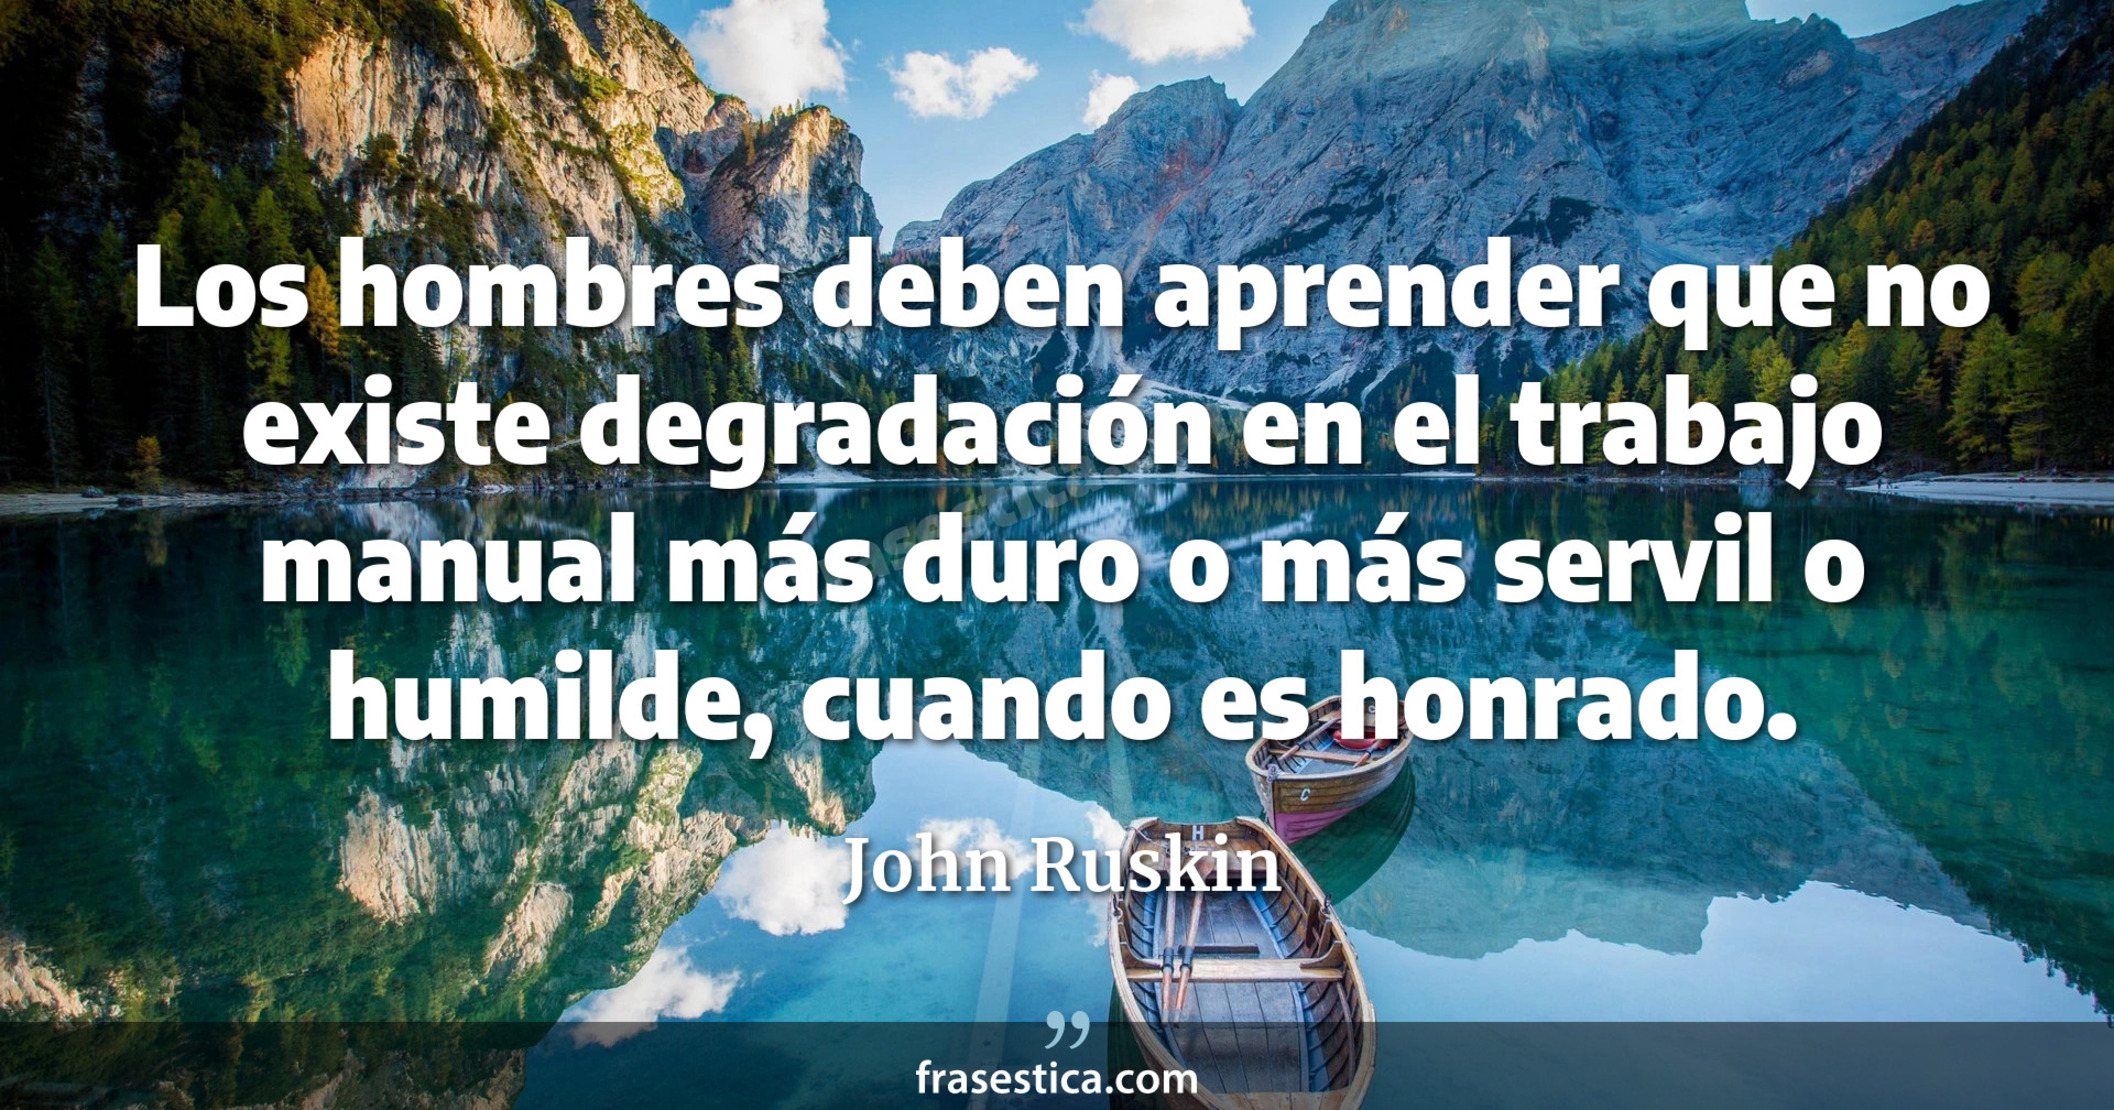 Los hombres deben aprender que no existe degradación en el trabajo manual más duro o más servil o humilde, cuando es honrado. - John Ruskin